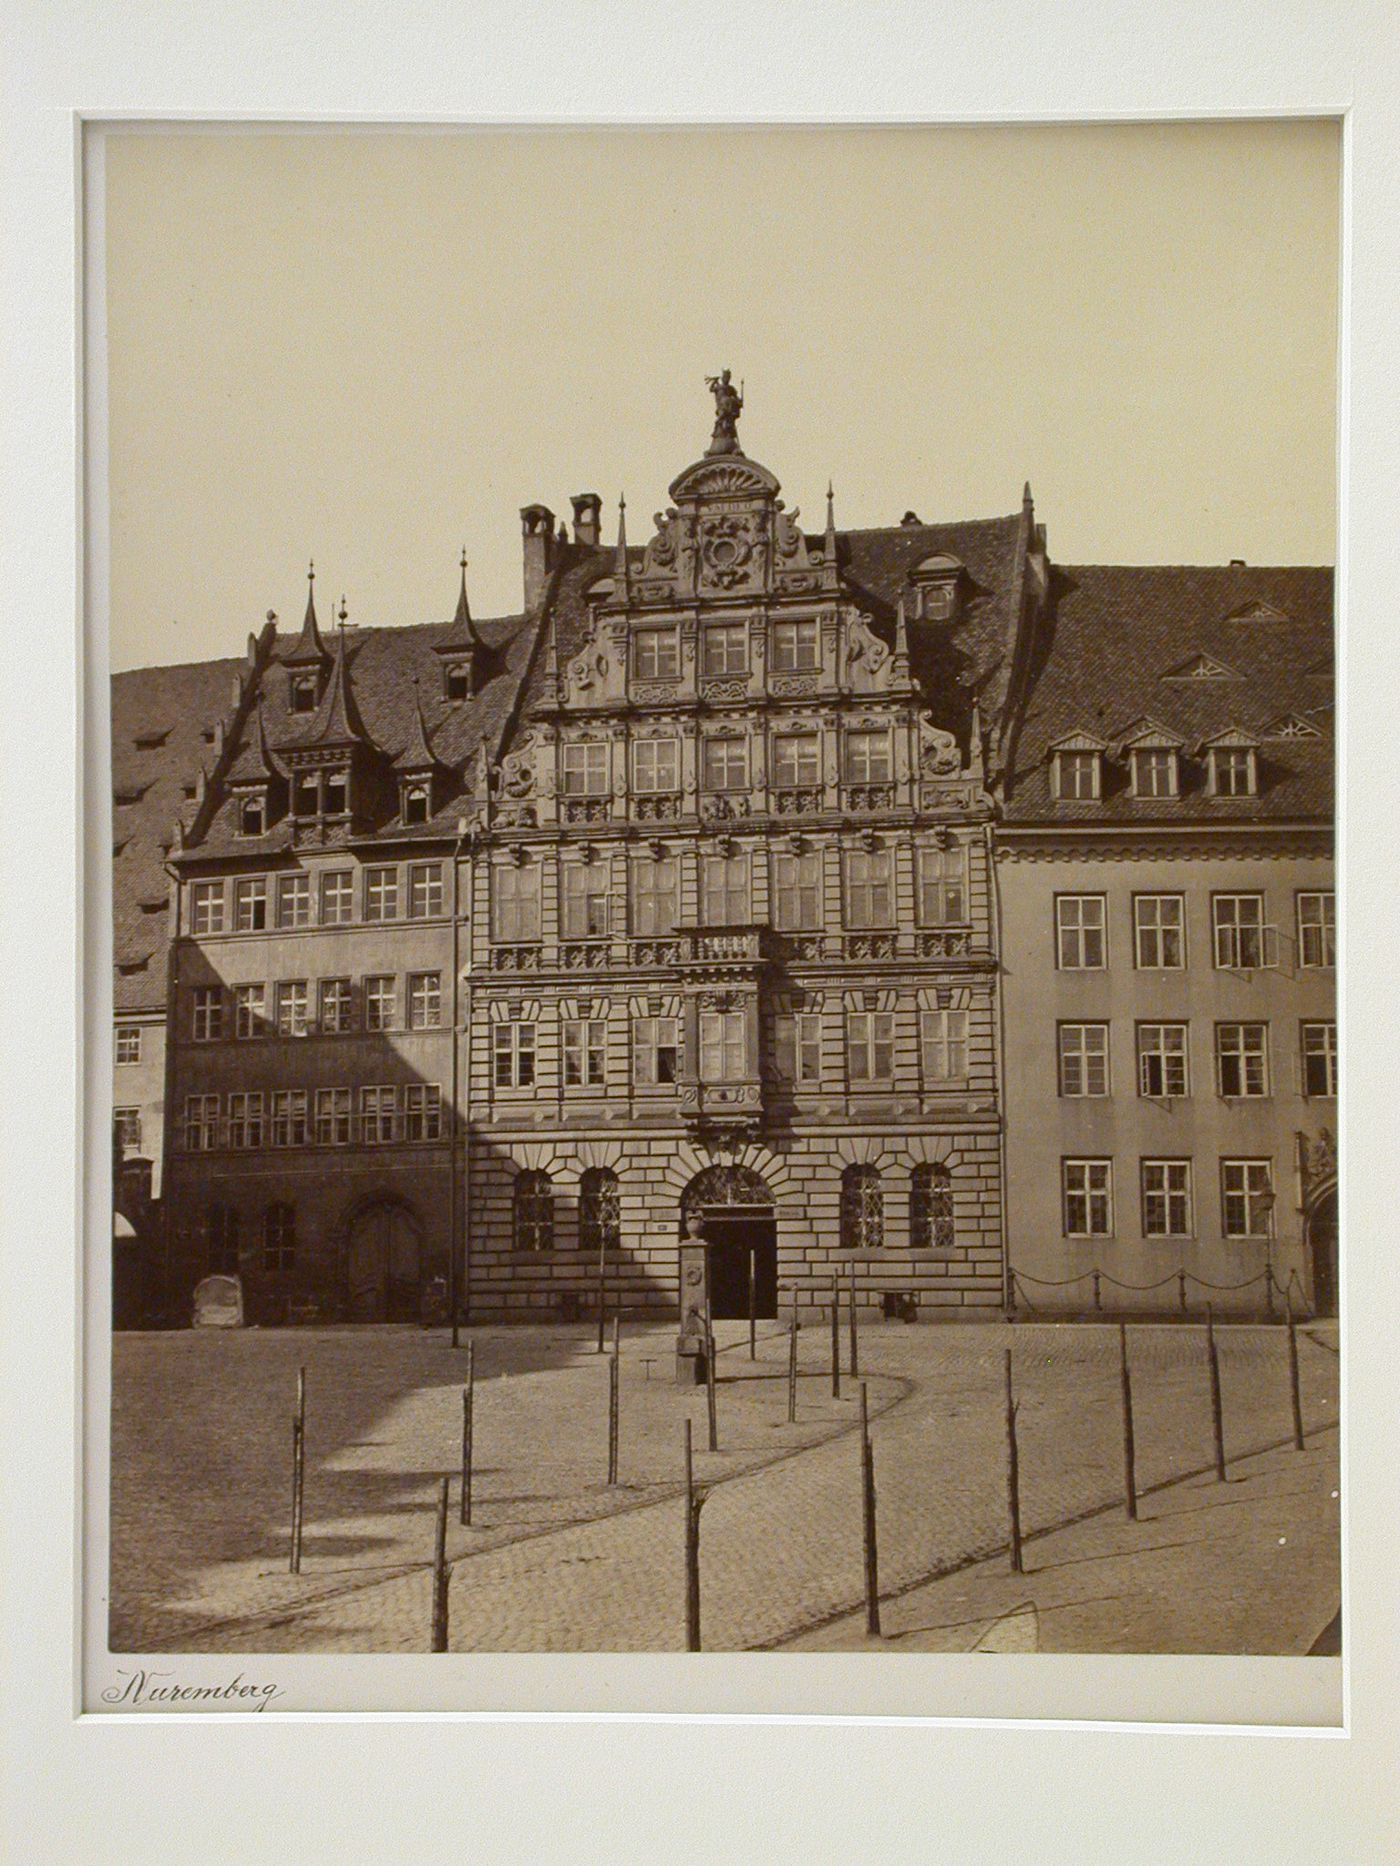 Façade of a house facing a square, Nuremberg, Germany